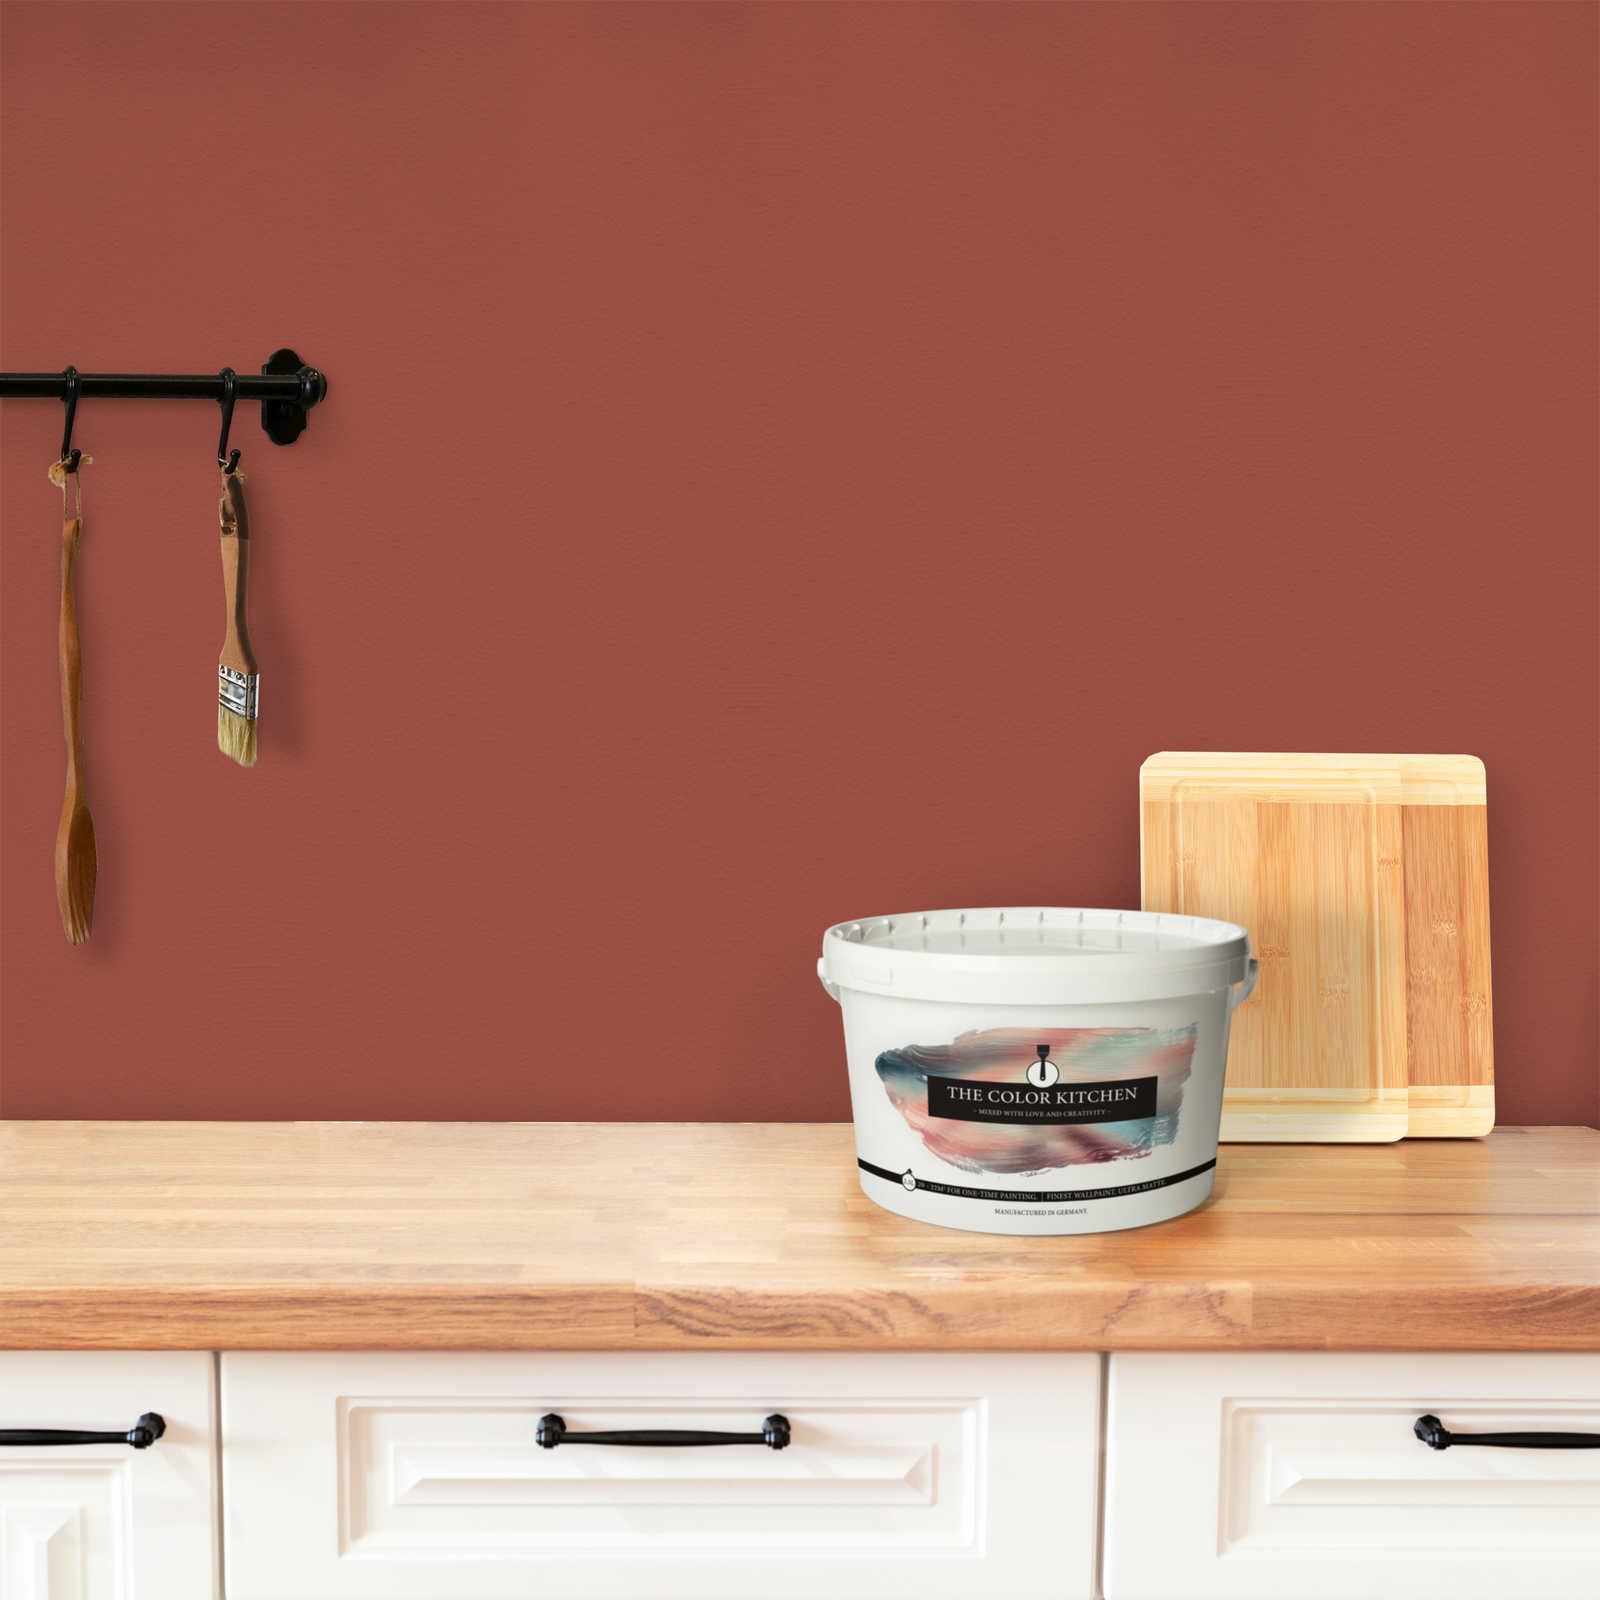             Wall Paint TCK5013 »Simple Safron« in intense saffron – 2.5 litre
        